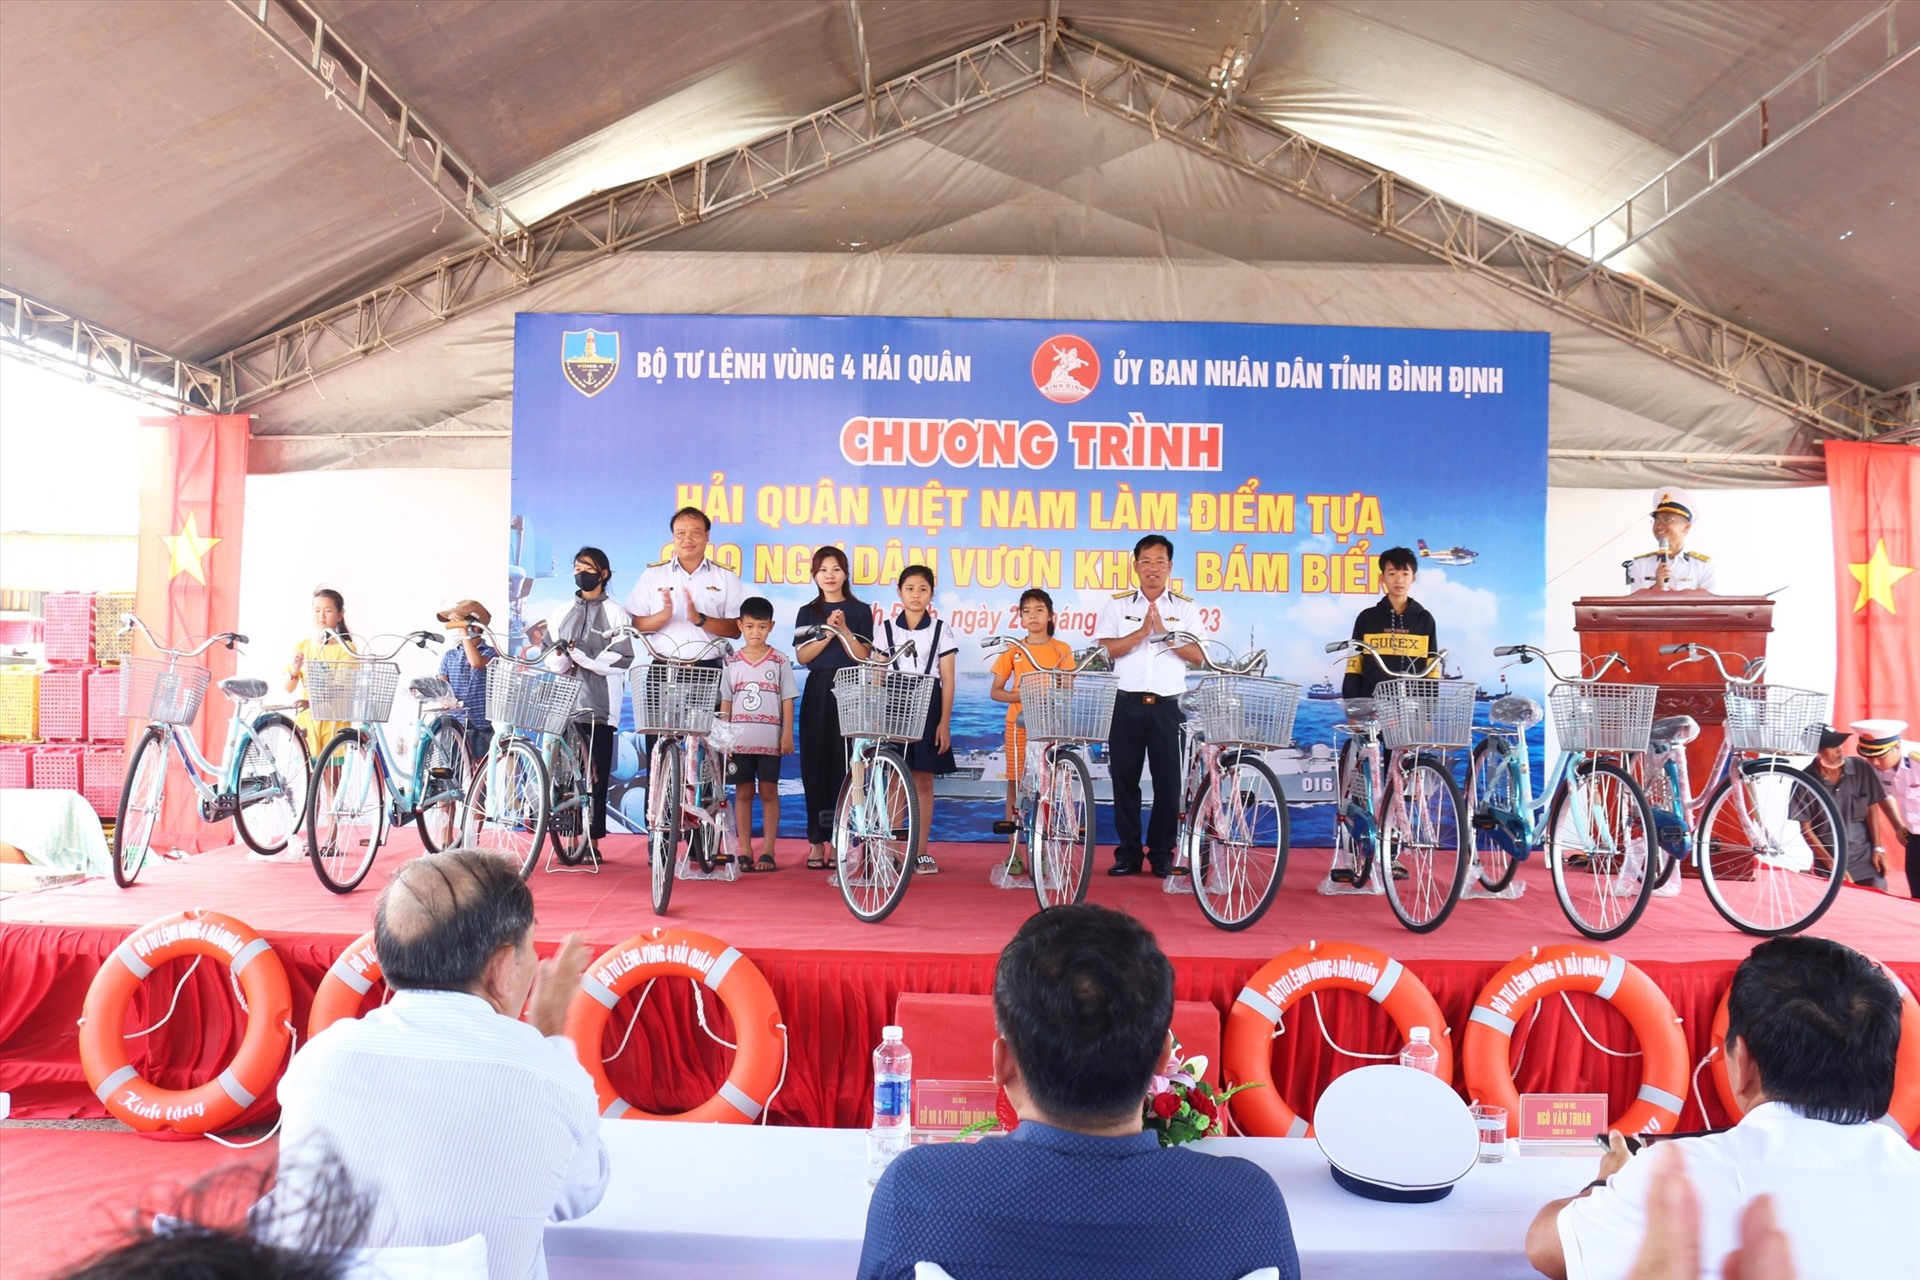 Khám, chữa bệnh, cấp phát thuốc miễn phí cho bà con ngư dân và tặng xe đạp cho con ngư dân Bình Định. Ảnh: Vũ Bằng